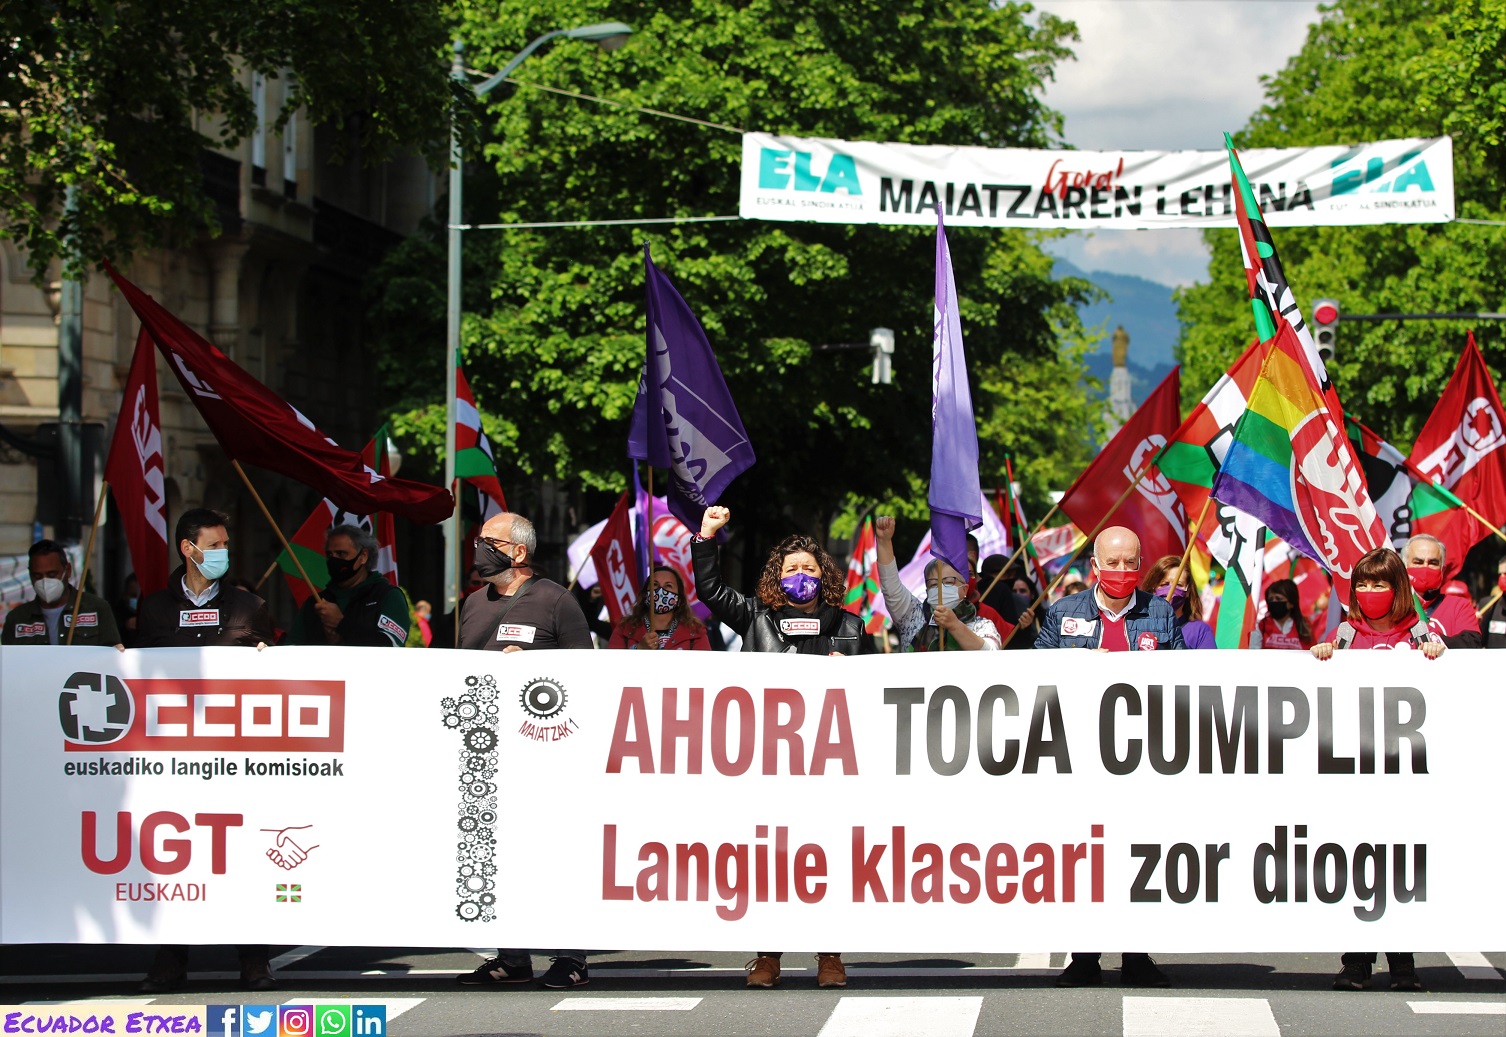 1mayo-primero-mayo-ccoo-ugt-euskadi-bilbao-gobierno-vasco-clase-trabajadora-ahora-toca-reforma-laboral-pensiones-smi